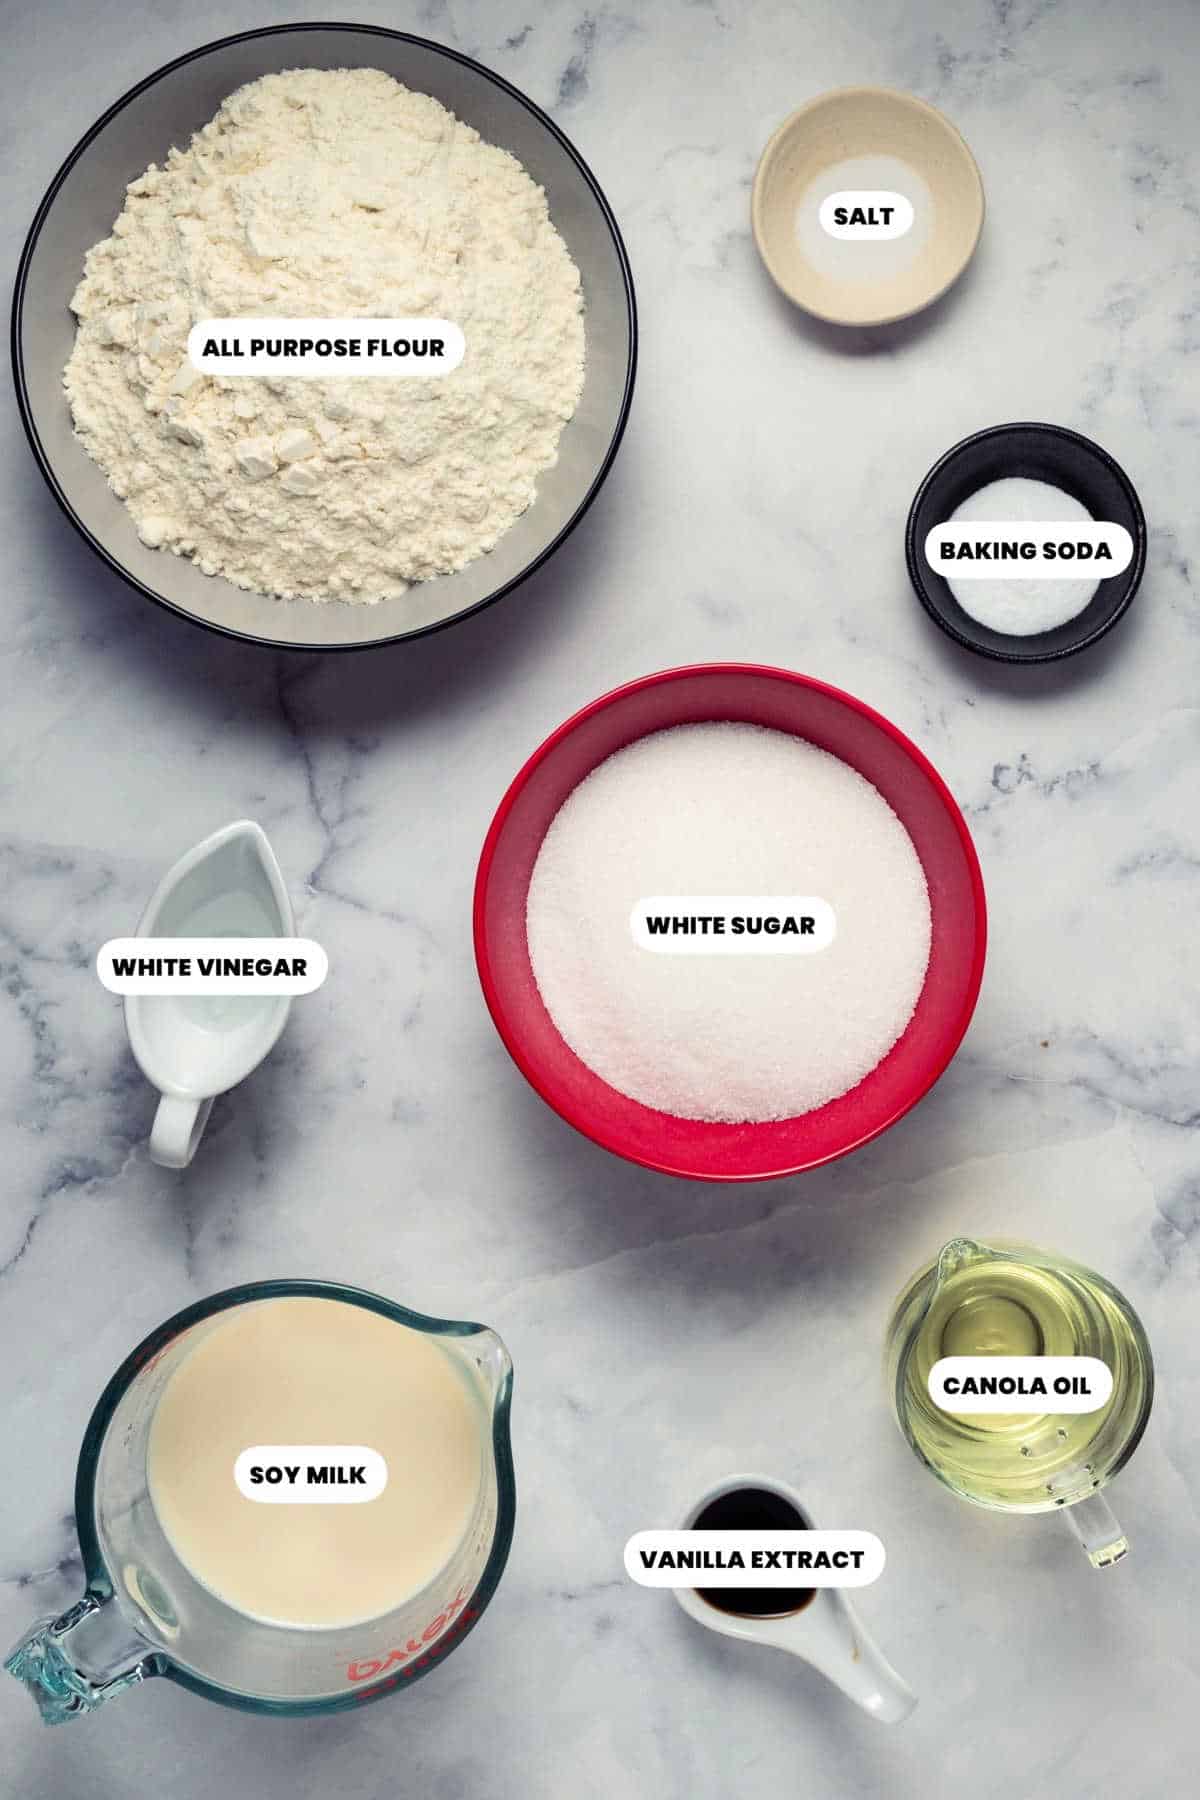 Ingredients to make the vegan sponge cake.